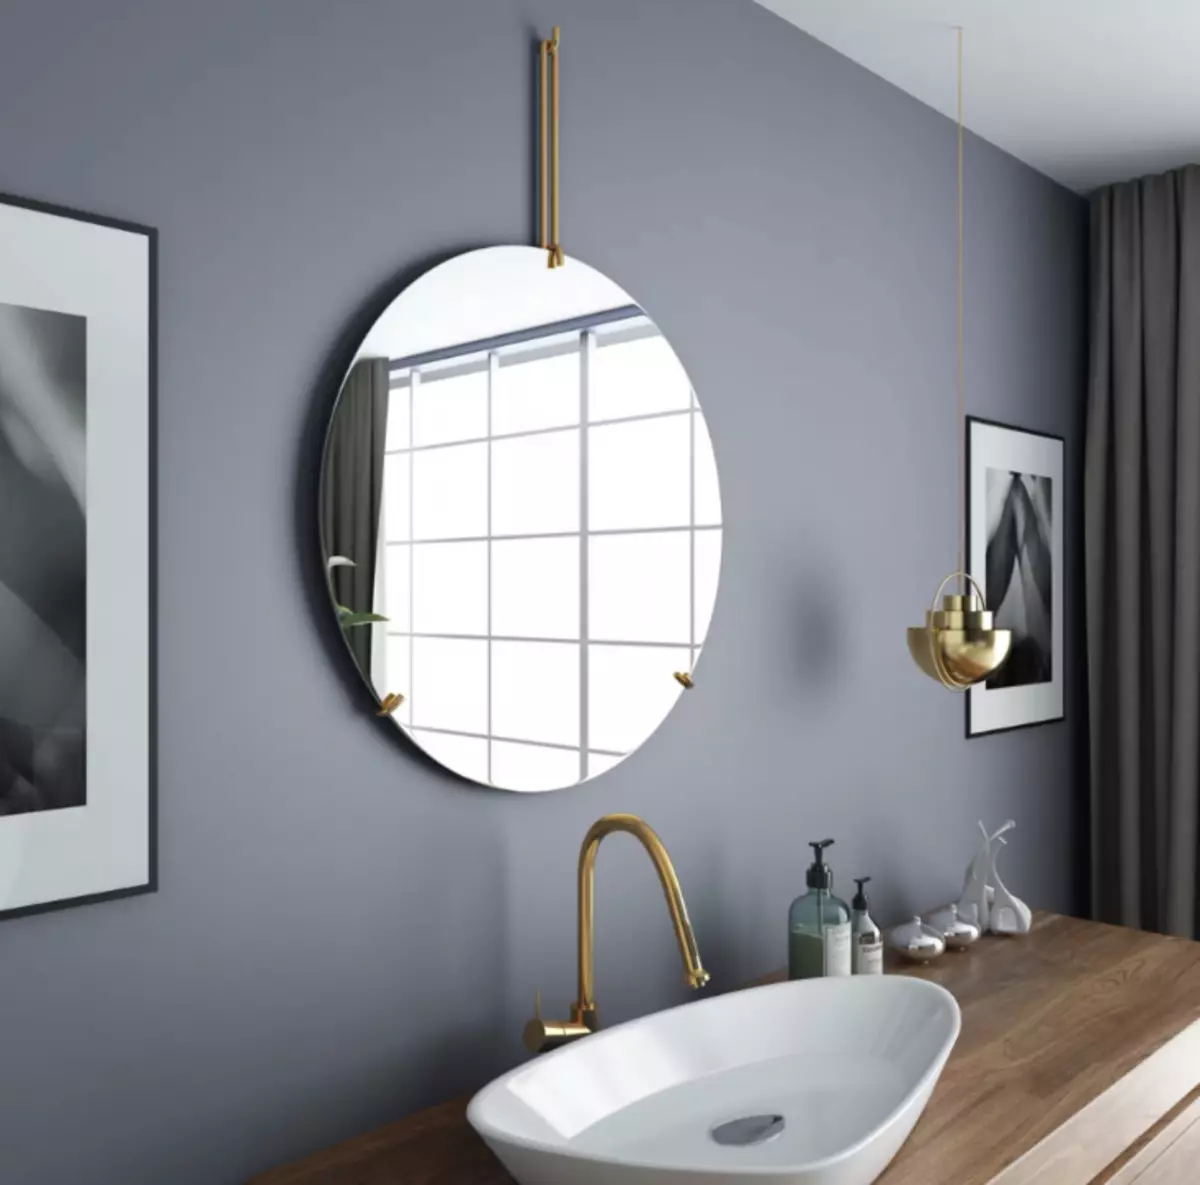 Miroir rond dans la salle de bain: miroirs design dans un cadre en bois, miroirs ronds de couleur noire et autre pour la salle de bain 10427_15